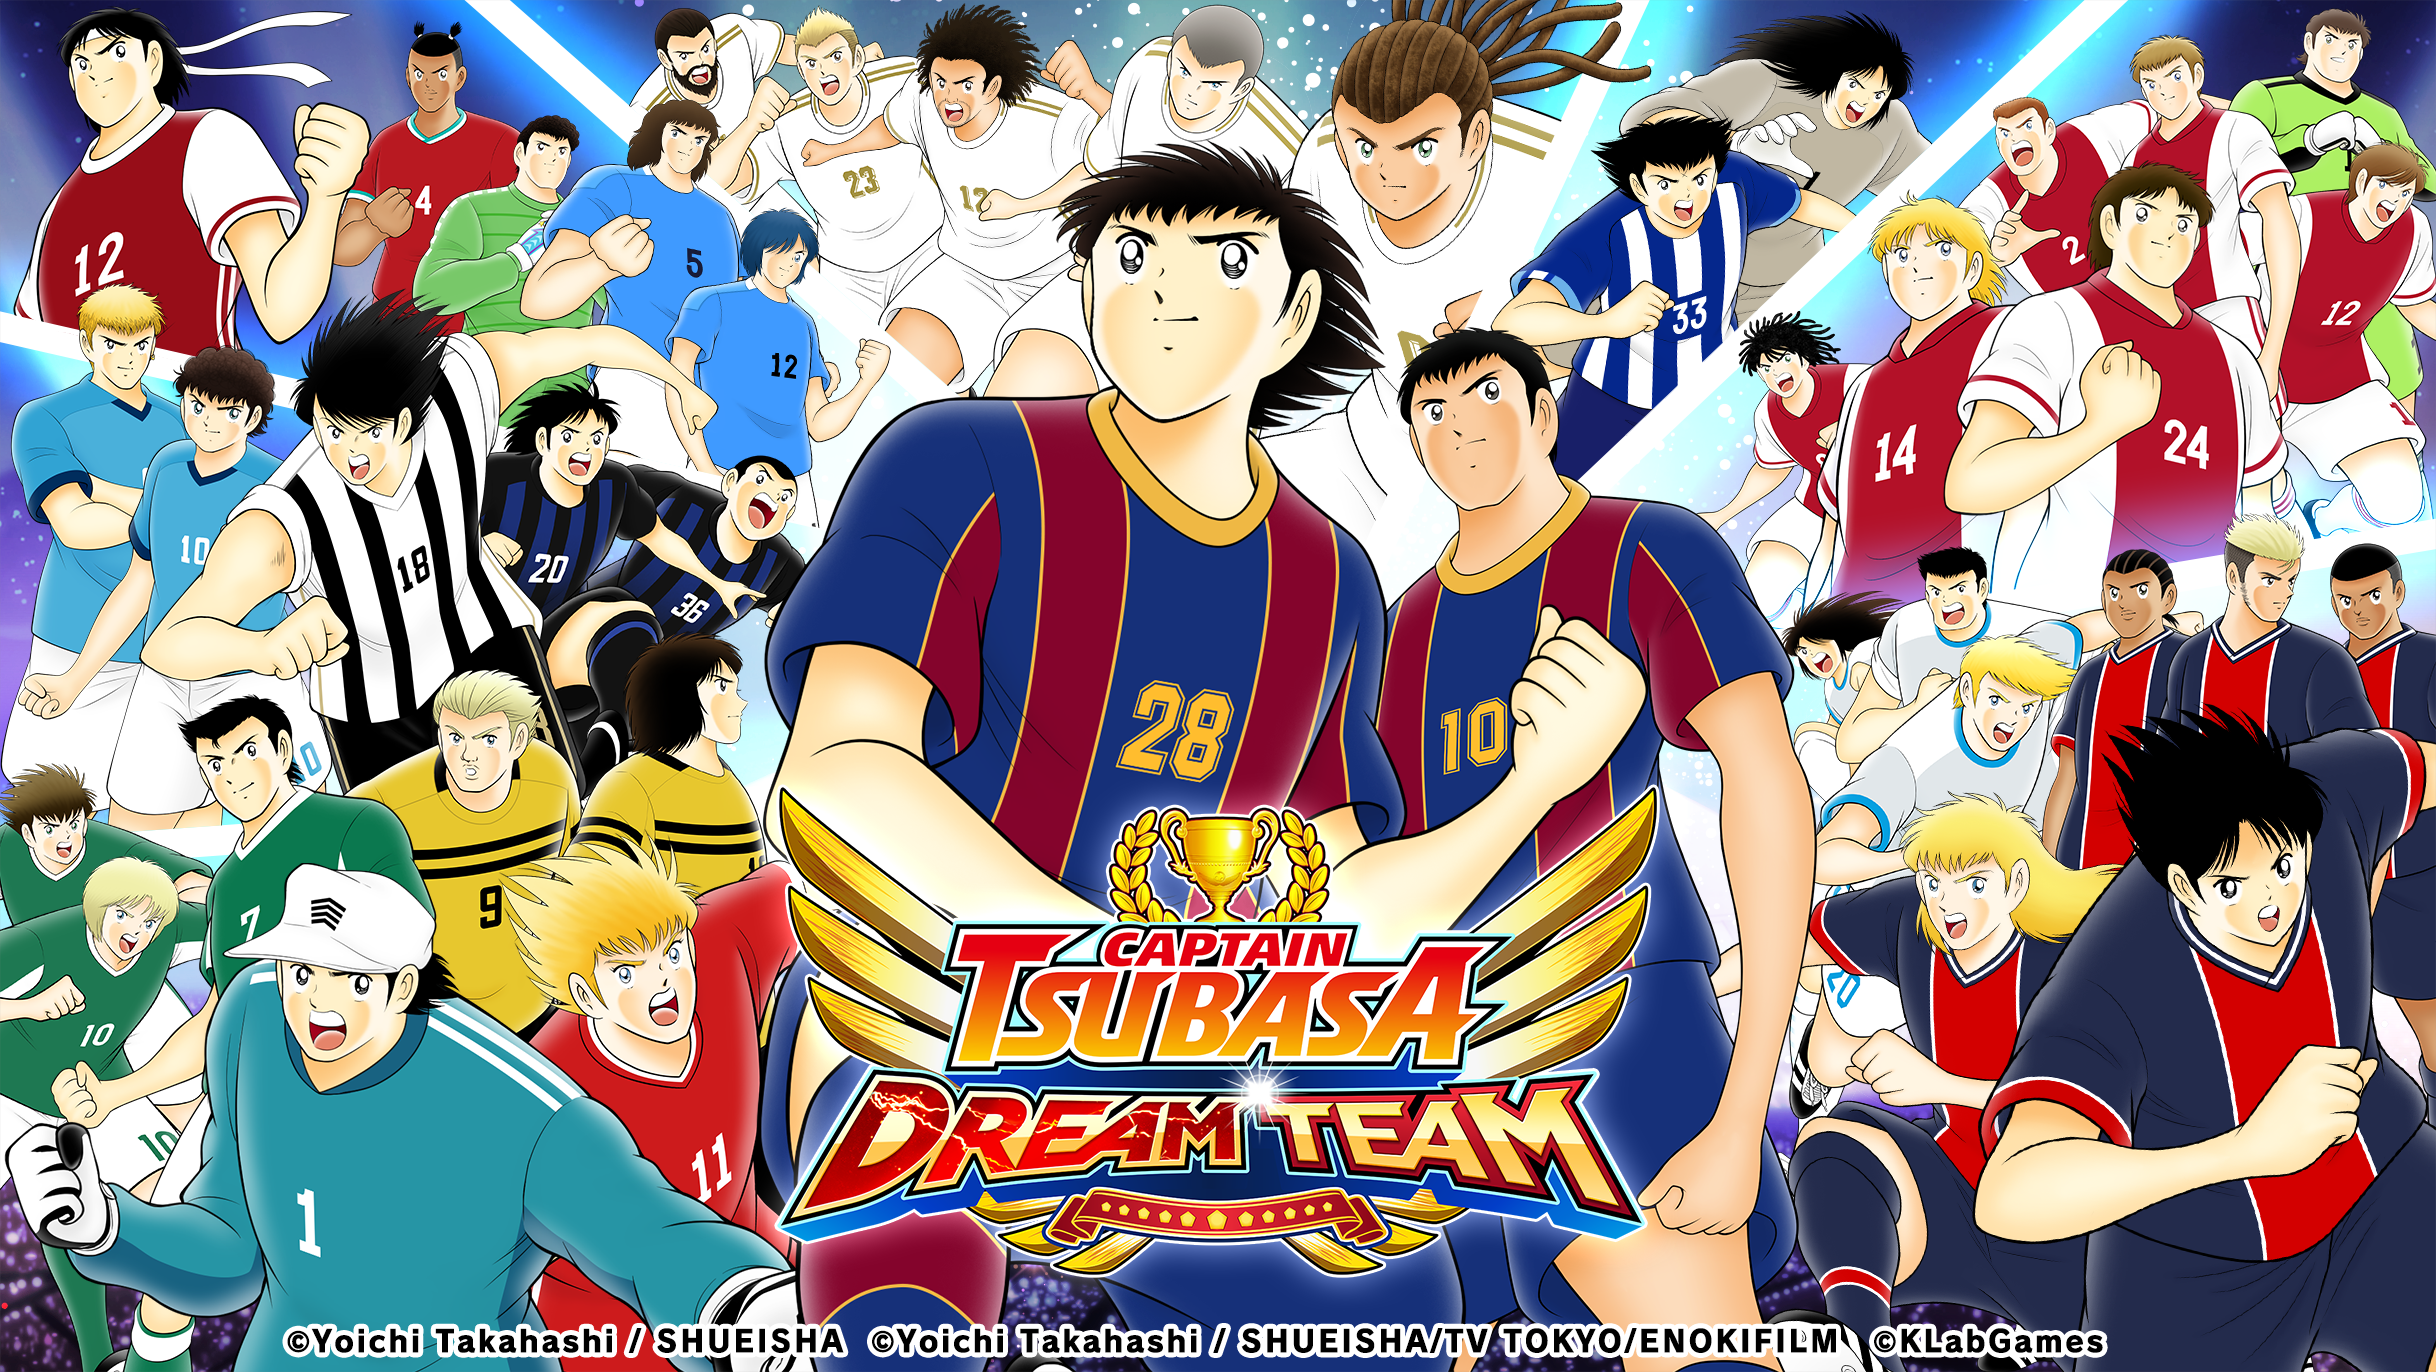 เกม "กัปตันซึบาสะ: ดรีมทีม (Captain Tsubasa: Dream Team)" เปิดตัวเนื้อเรื่องใหม่ใน NEXT DREAM จากผลงานต้นฉบับของอาจารย์ทาคาฮาชิ โยอิจิ!